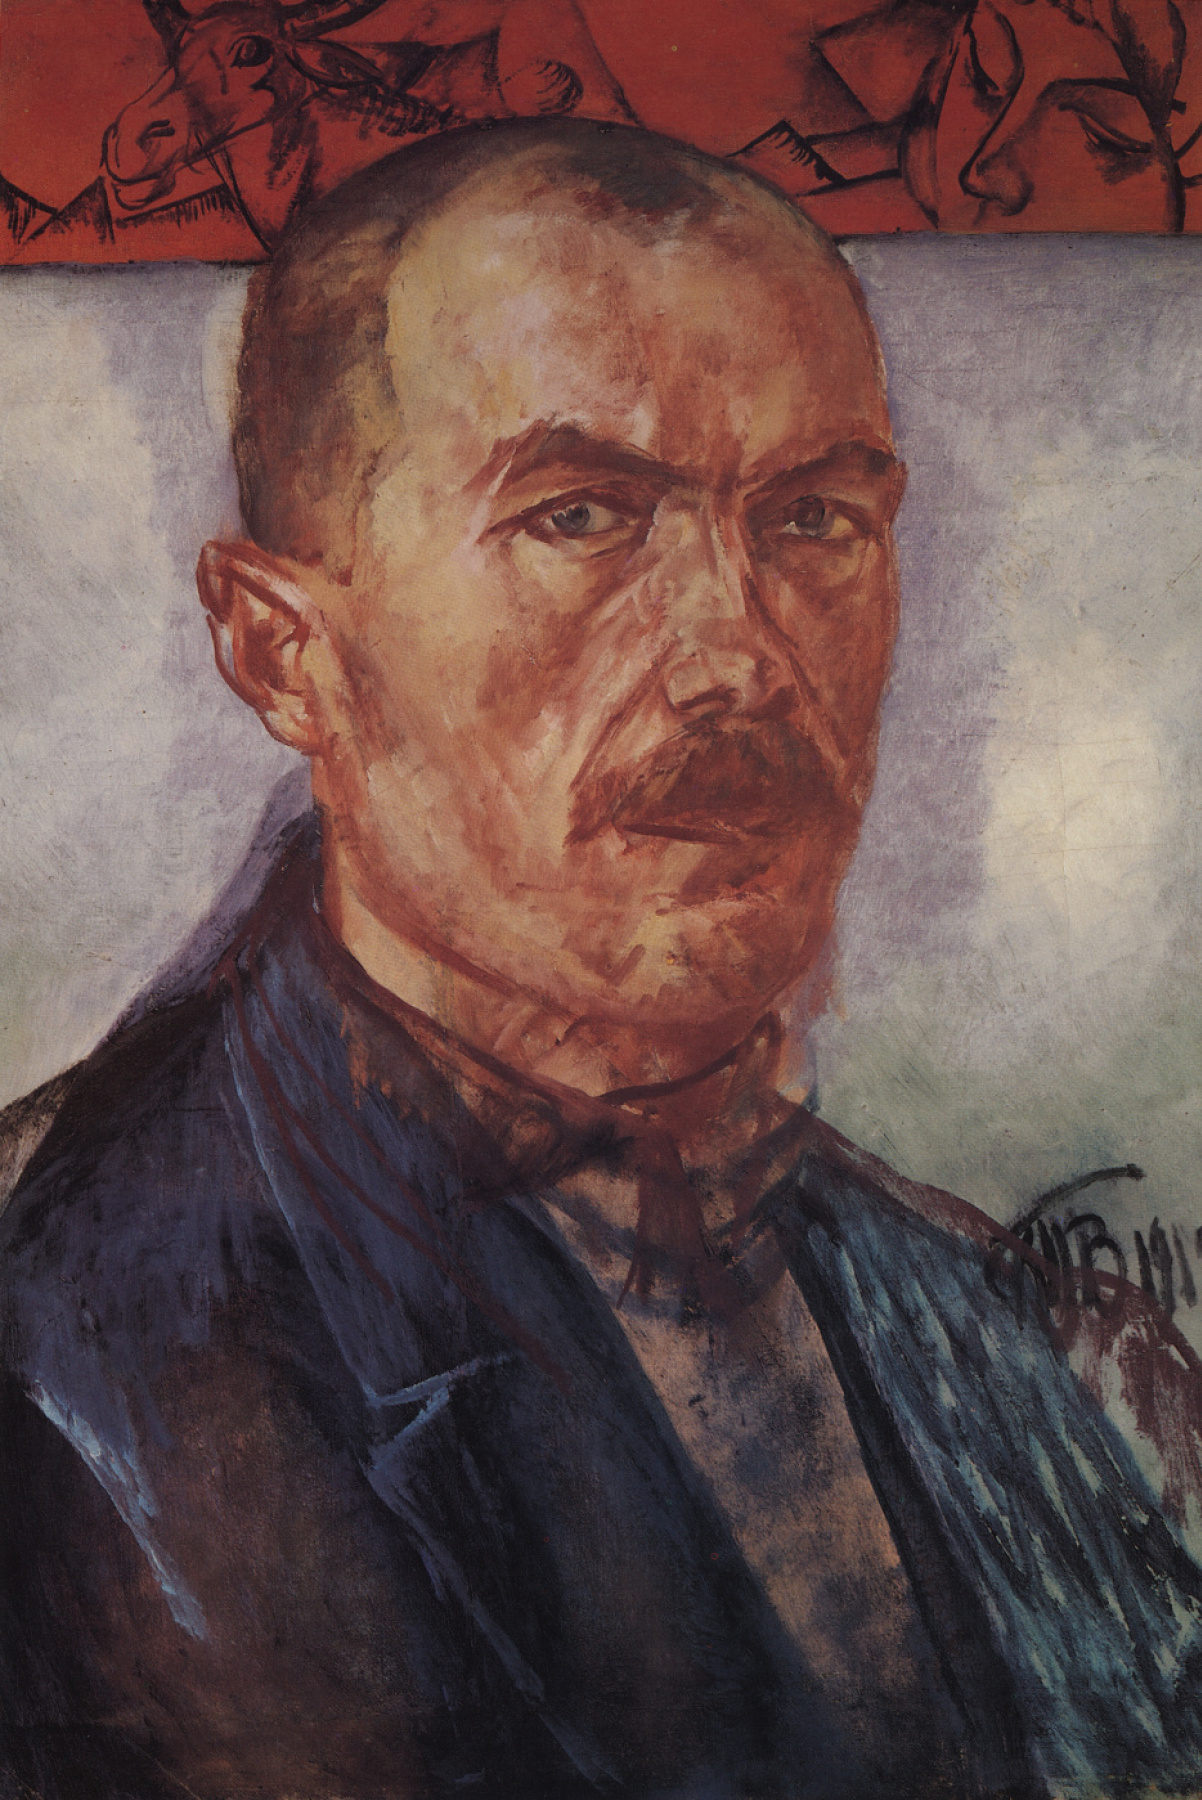 Kuzma Sergeevich Petrov-Vodkin. Self-portrait